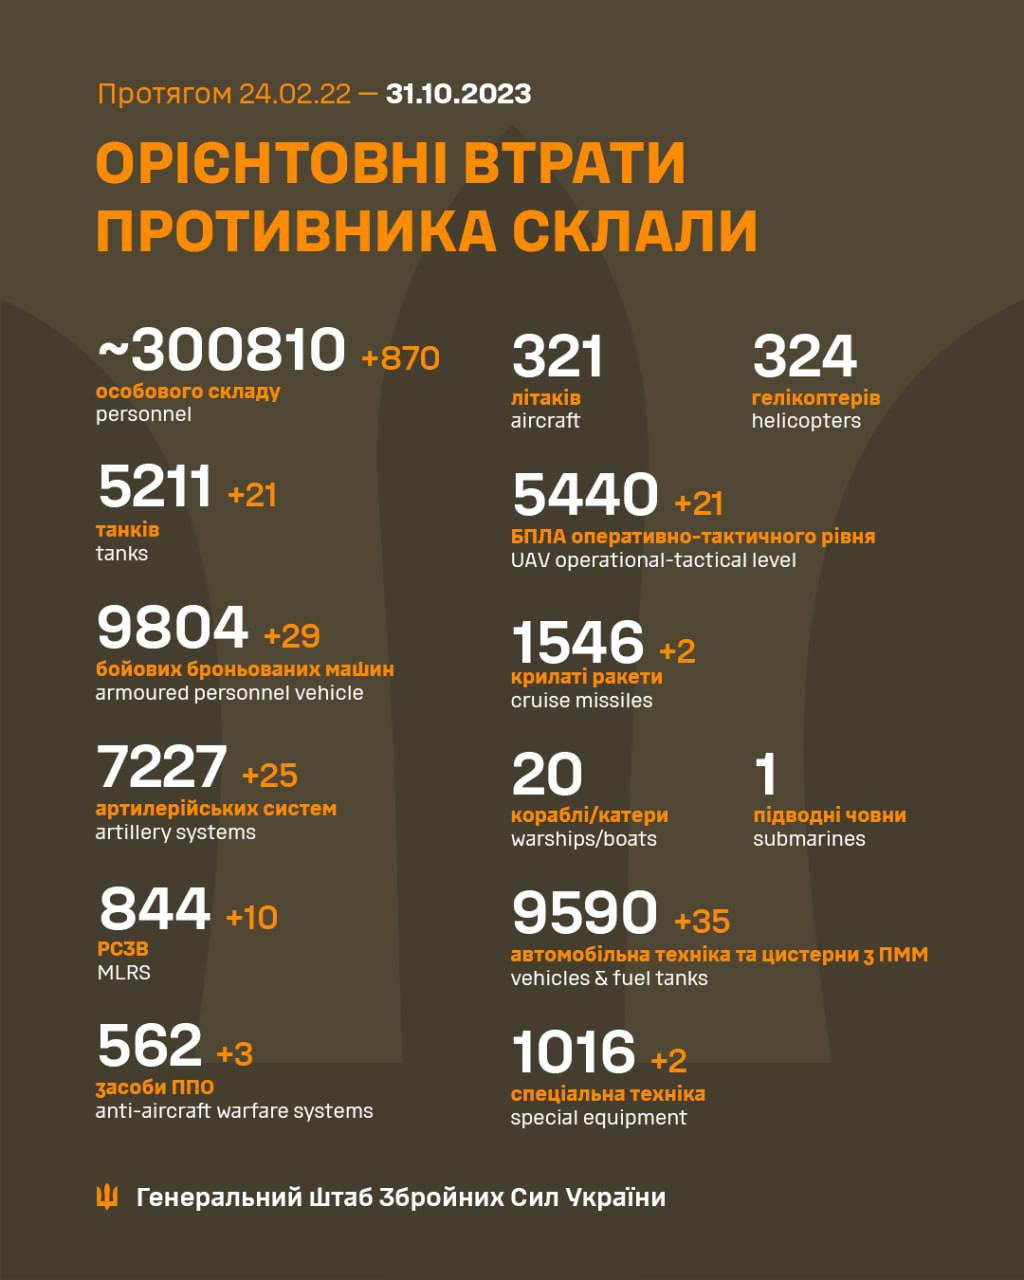 วันนี้เป็นวันฮาโลวีน ยูเครนเป็นวันครบรอบ การทำลายล้างผู้รุกรานชาวรัสเซีย 300,000 รายได้รับการยืนยันอย่างเป็นทางการแล้ว